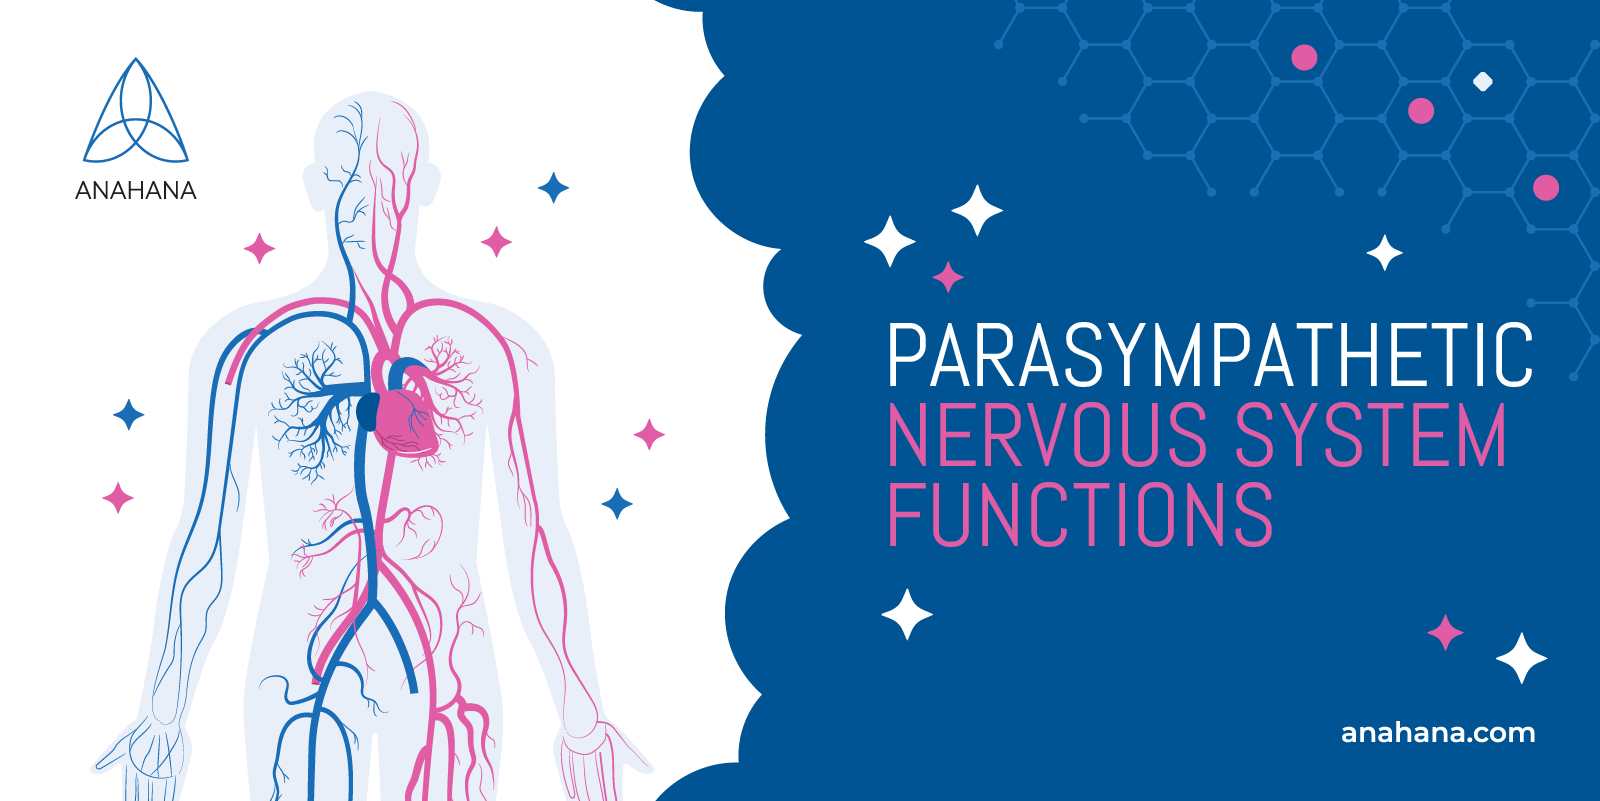 le funzioni del sistema nervoso parasimpatico